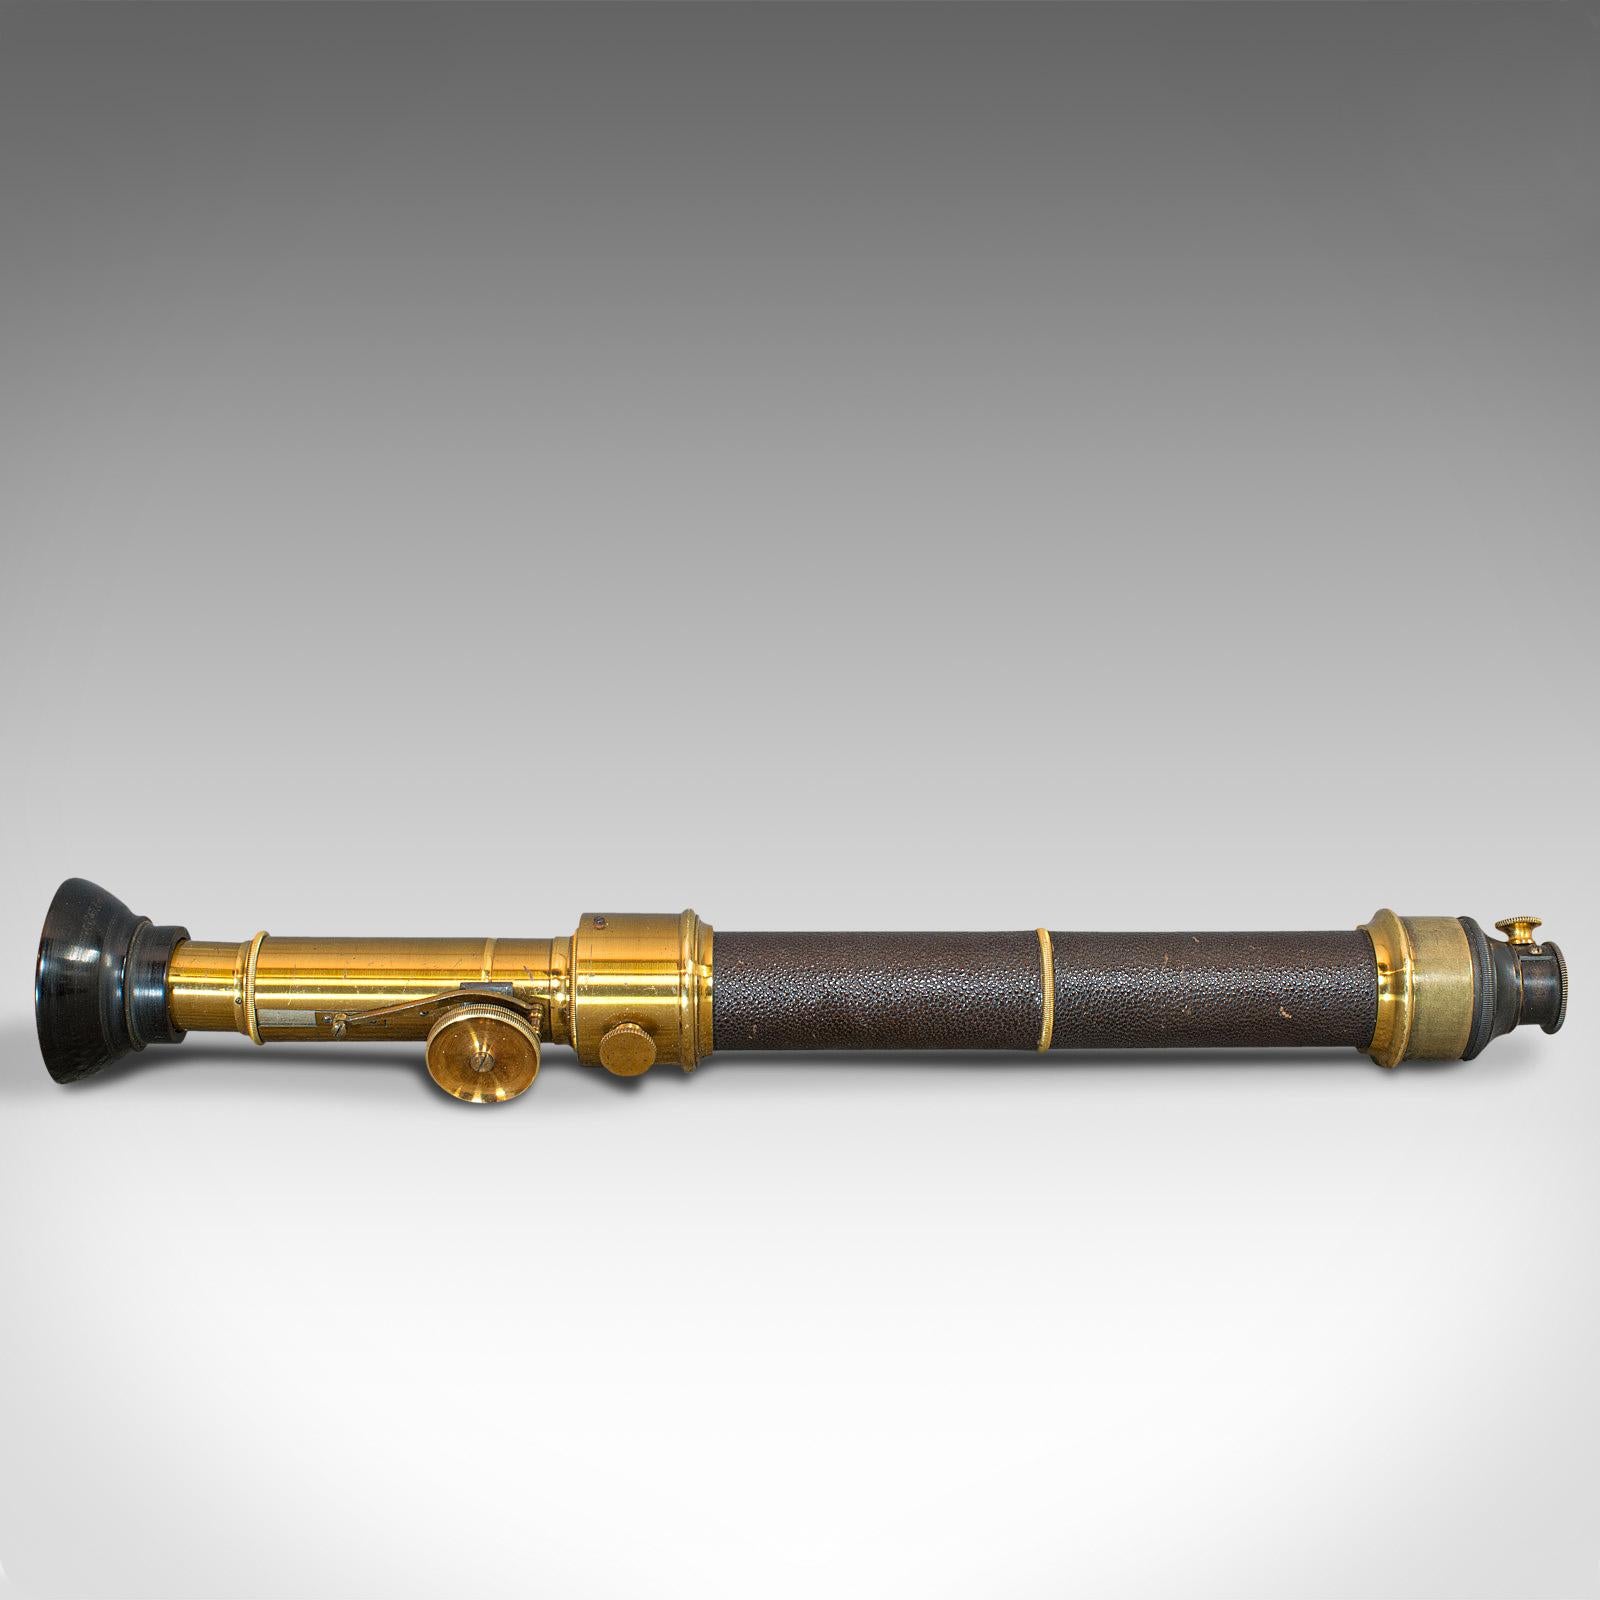 Victorian Antique Spectrometer, French, Brass, Scientific Instrument, J G Hofmann, 1860